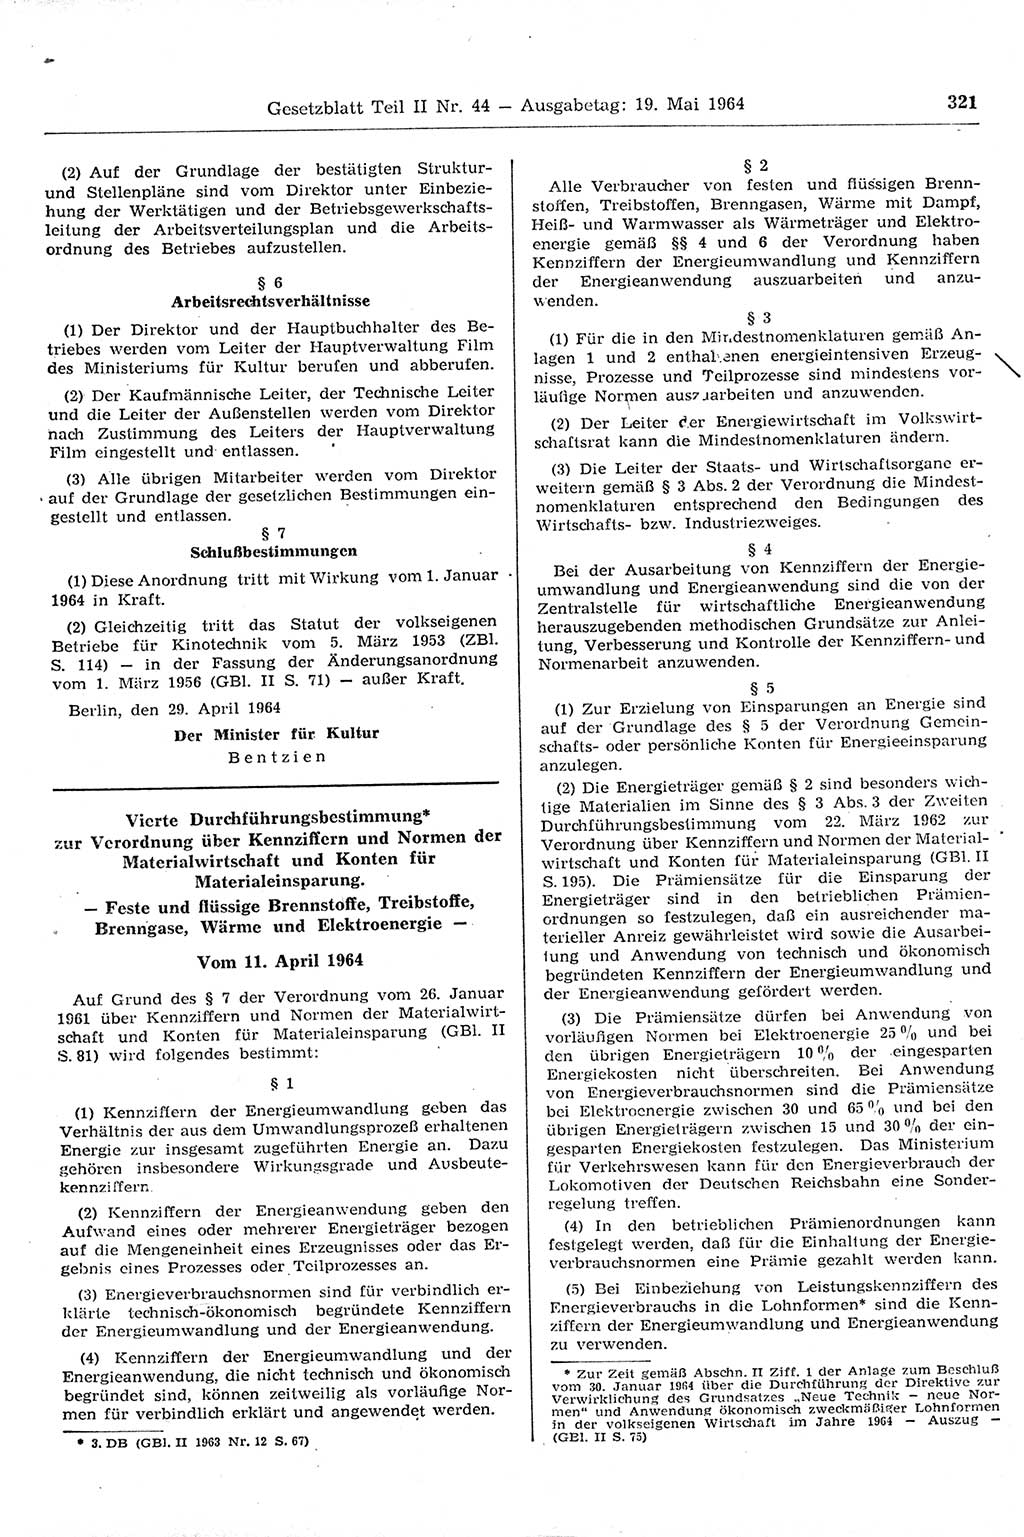 Gesetzblatt (GBl.) der Deutschen Demokratischen Republik (DDR) Teil ⅠⅠ 1964, Seite 321 (GBl. DDR ⅠⅠ 1964, S. 321)